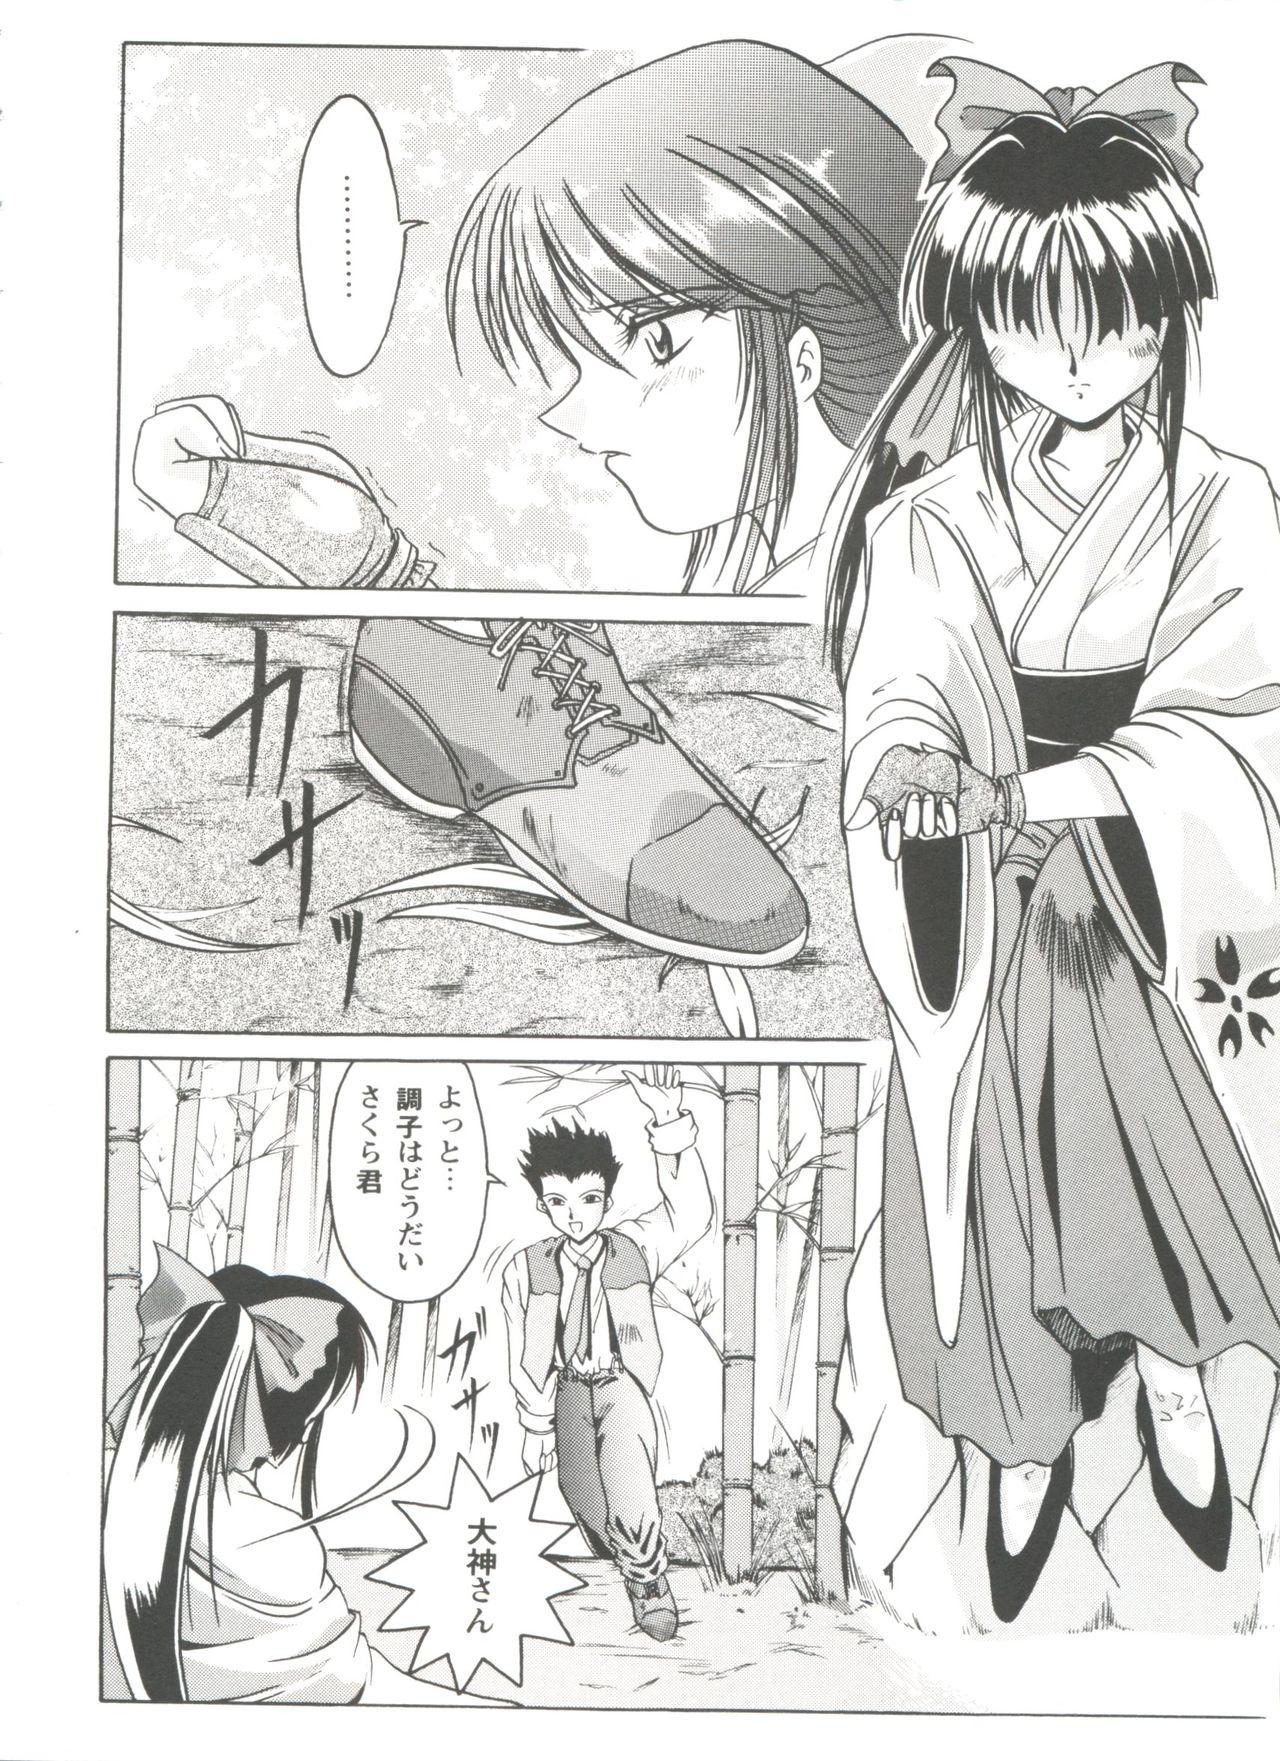 Roludo Girl's Parade Scene 4 - Sakura taisen Martian successor nadesico Slayers Yu yu hakusho Sexo Anal - Page 7